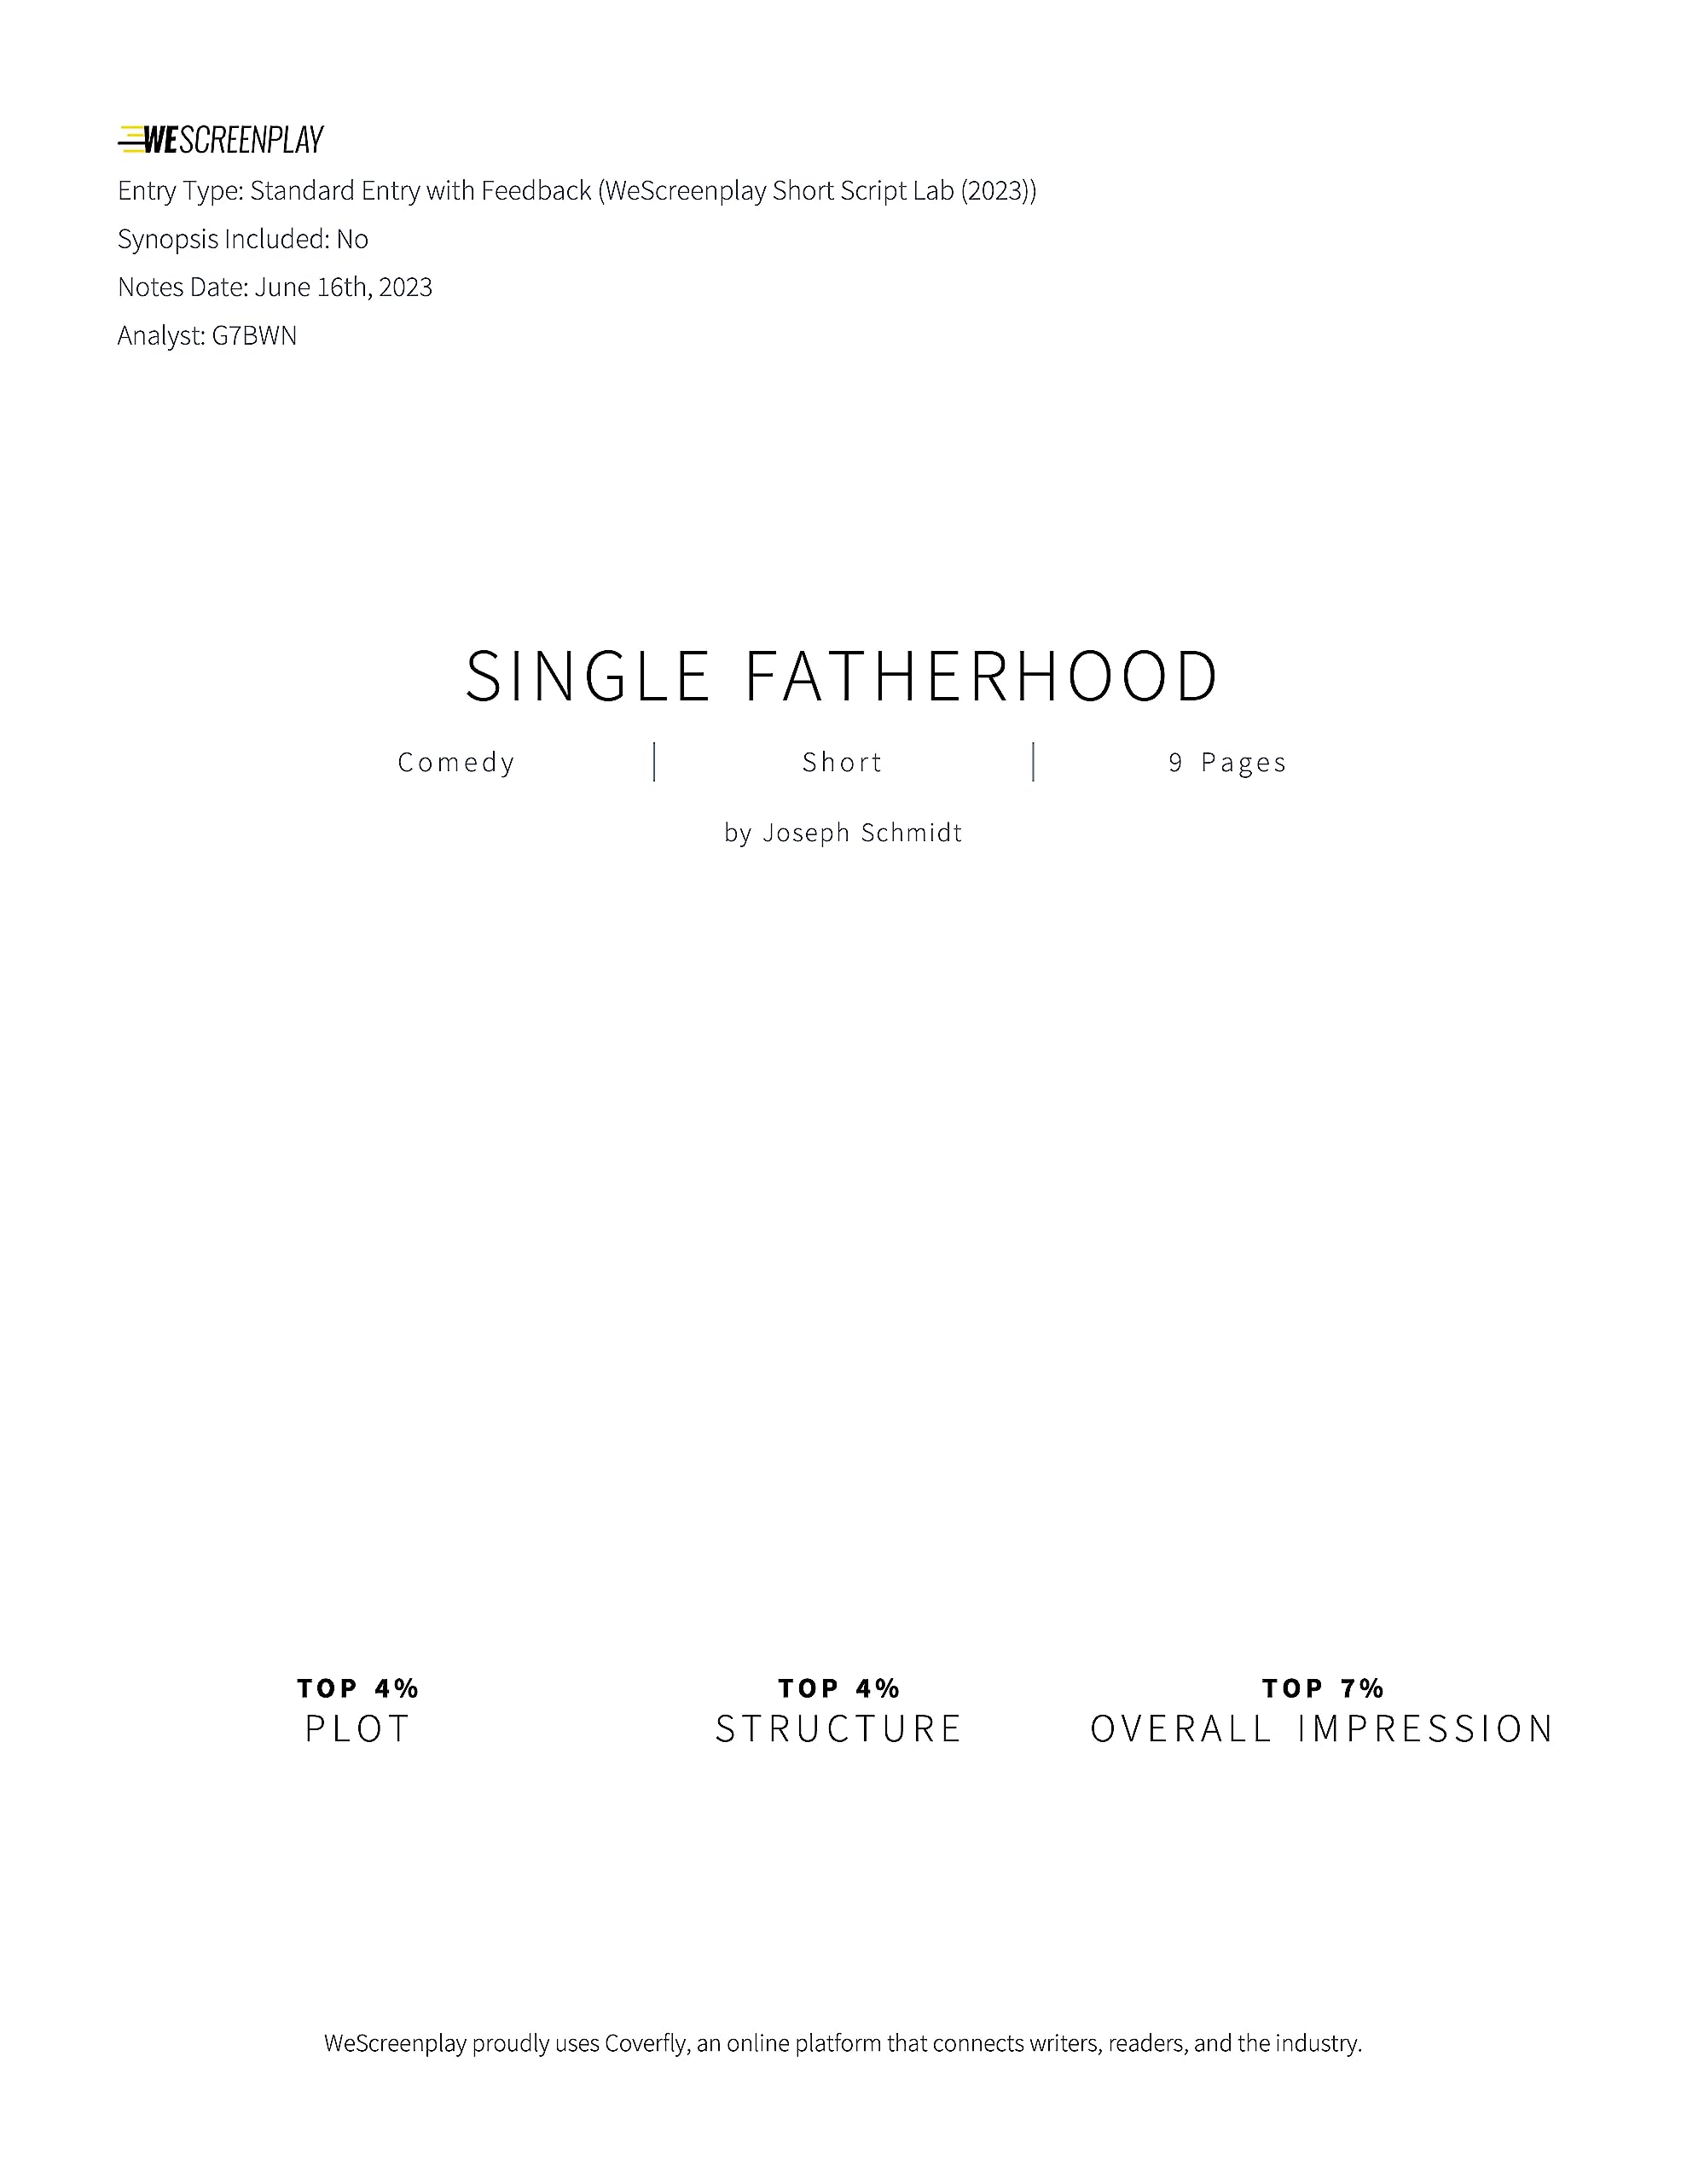 Single Fatherhood: Screenplay